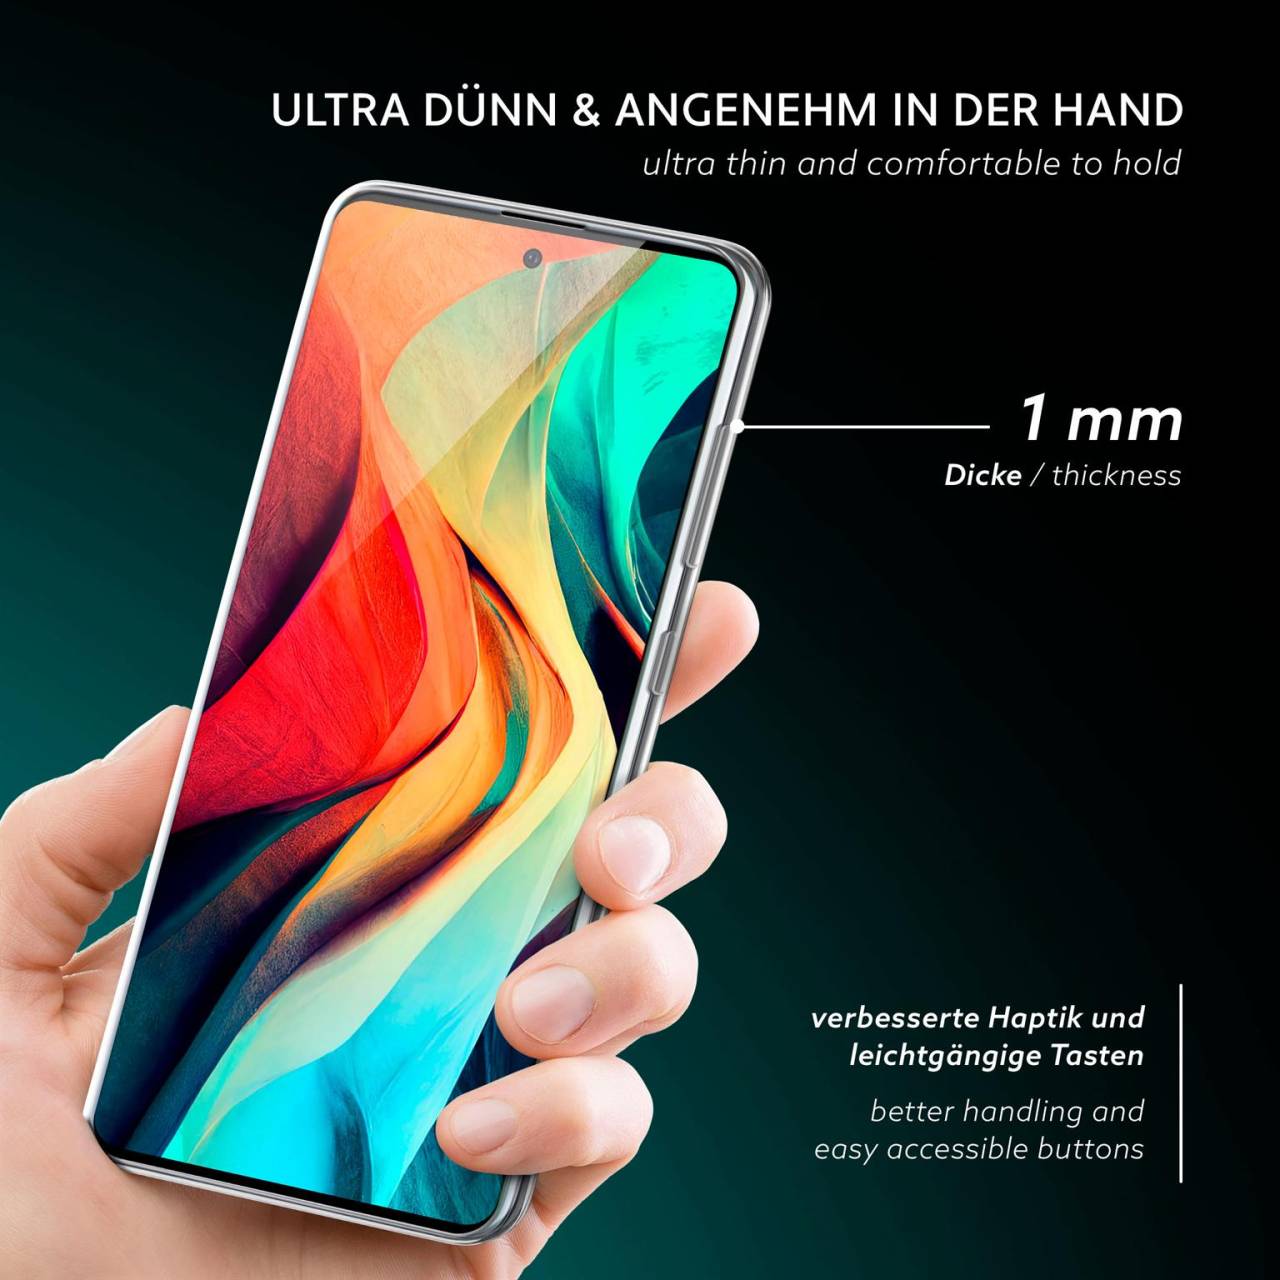 moex Aero Case für Samsung Galaxy A51 – Durchsichtige Hülle aus Silikon, Ultra Slim Handyhülle